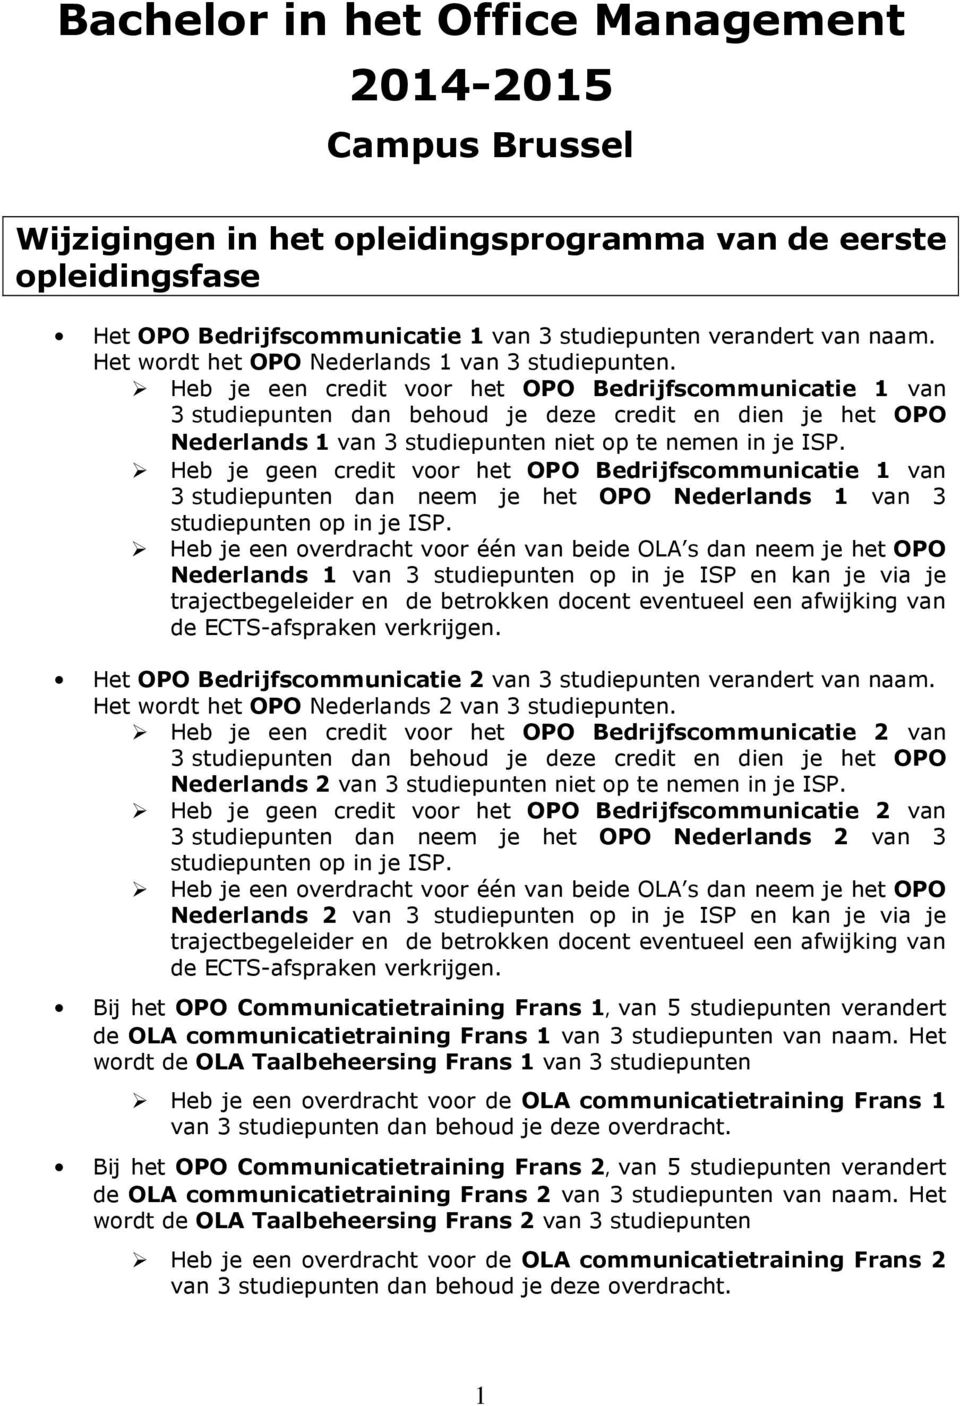 Heb je een credit voor het OPO Bedrijfscommunicatie 1 van 3 studiepunten dan behoud je deze credit en dien je het OPO Nederlands 1 van 3 studiepunten niet op te nemen in je ISP.